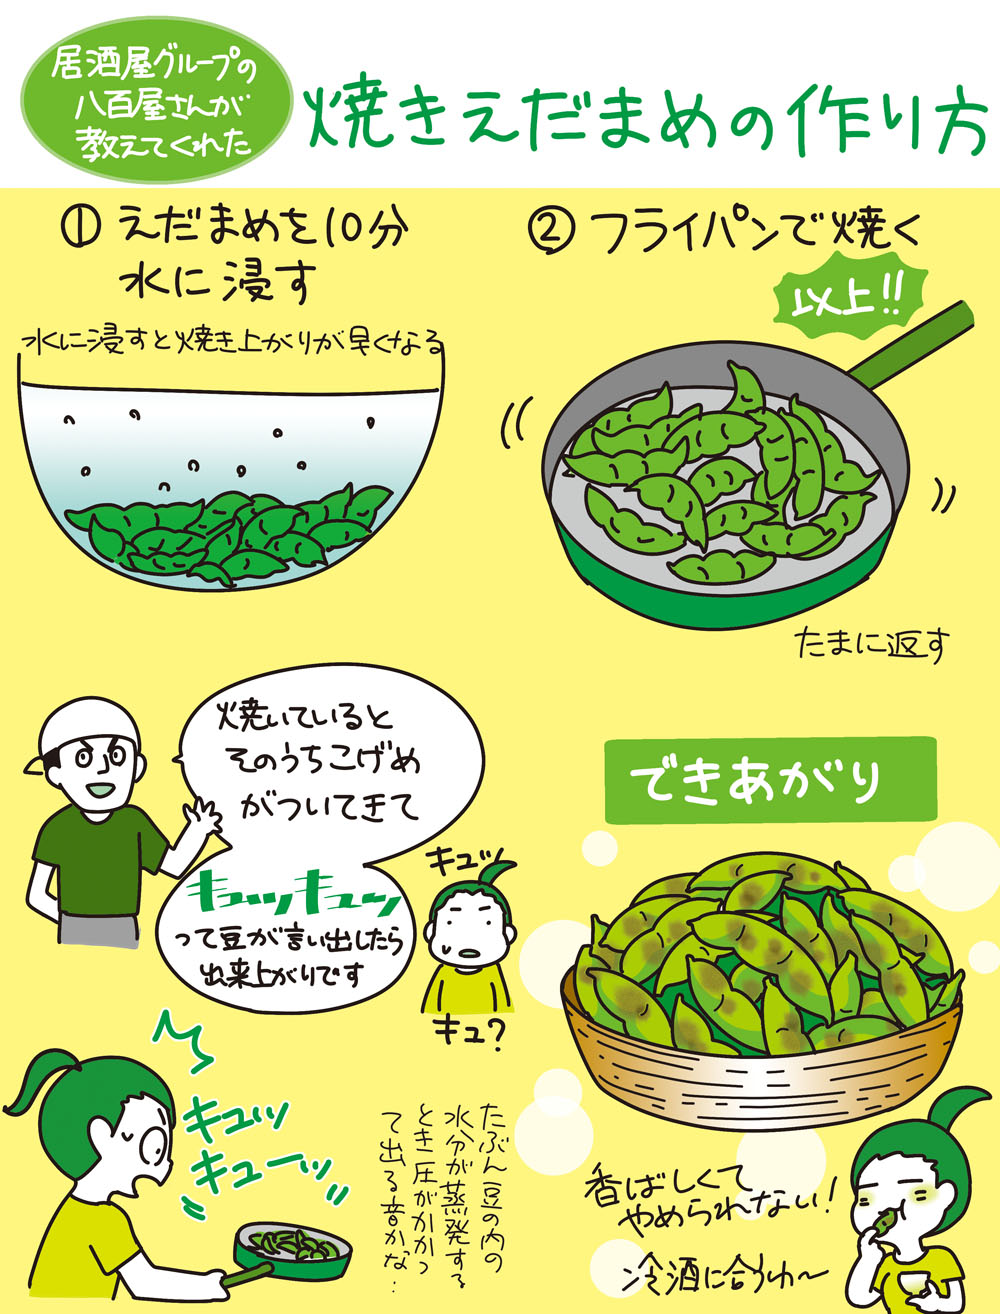 枝豆の季節がやってきた 美味しすぎる焼き枝豆のレシピがこちら 話題の画像プラス